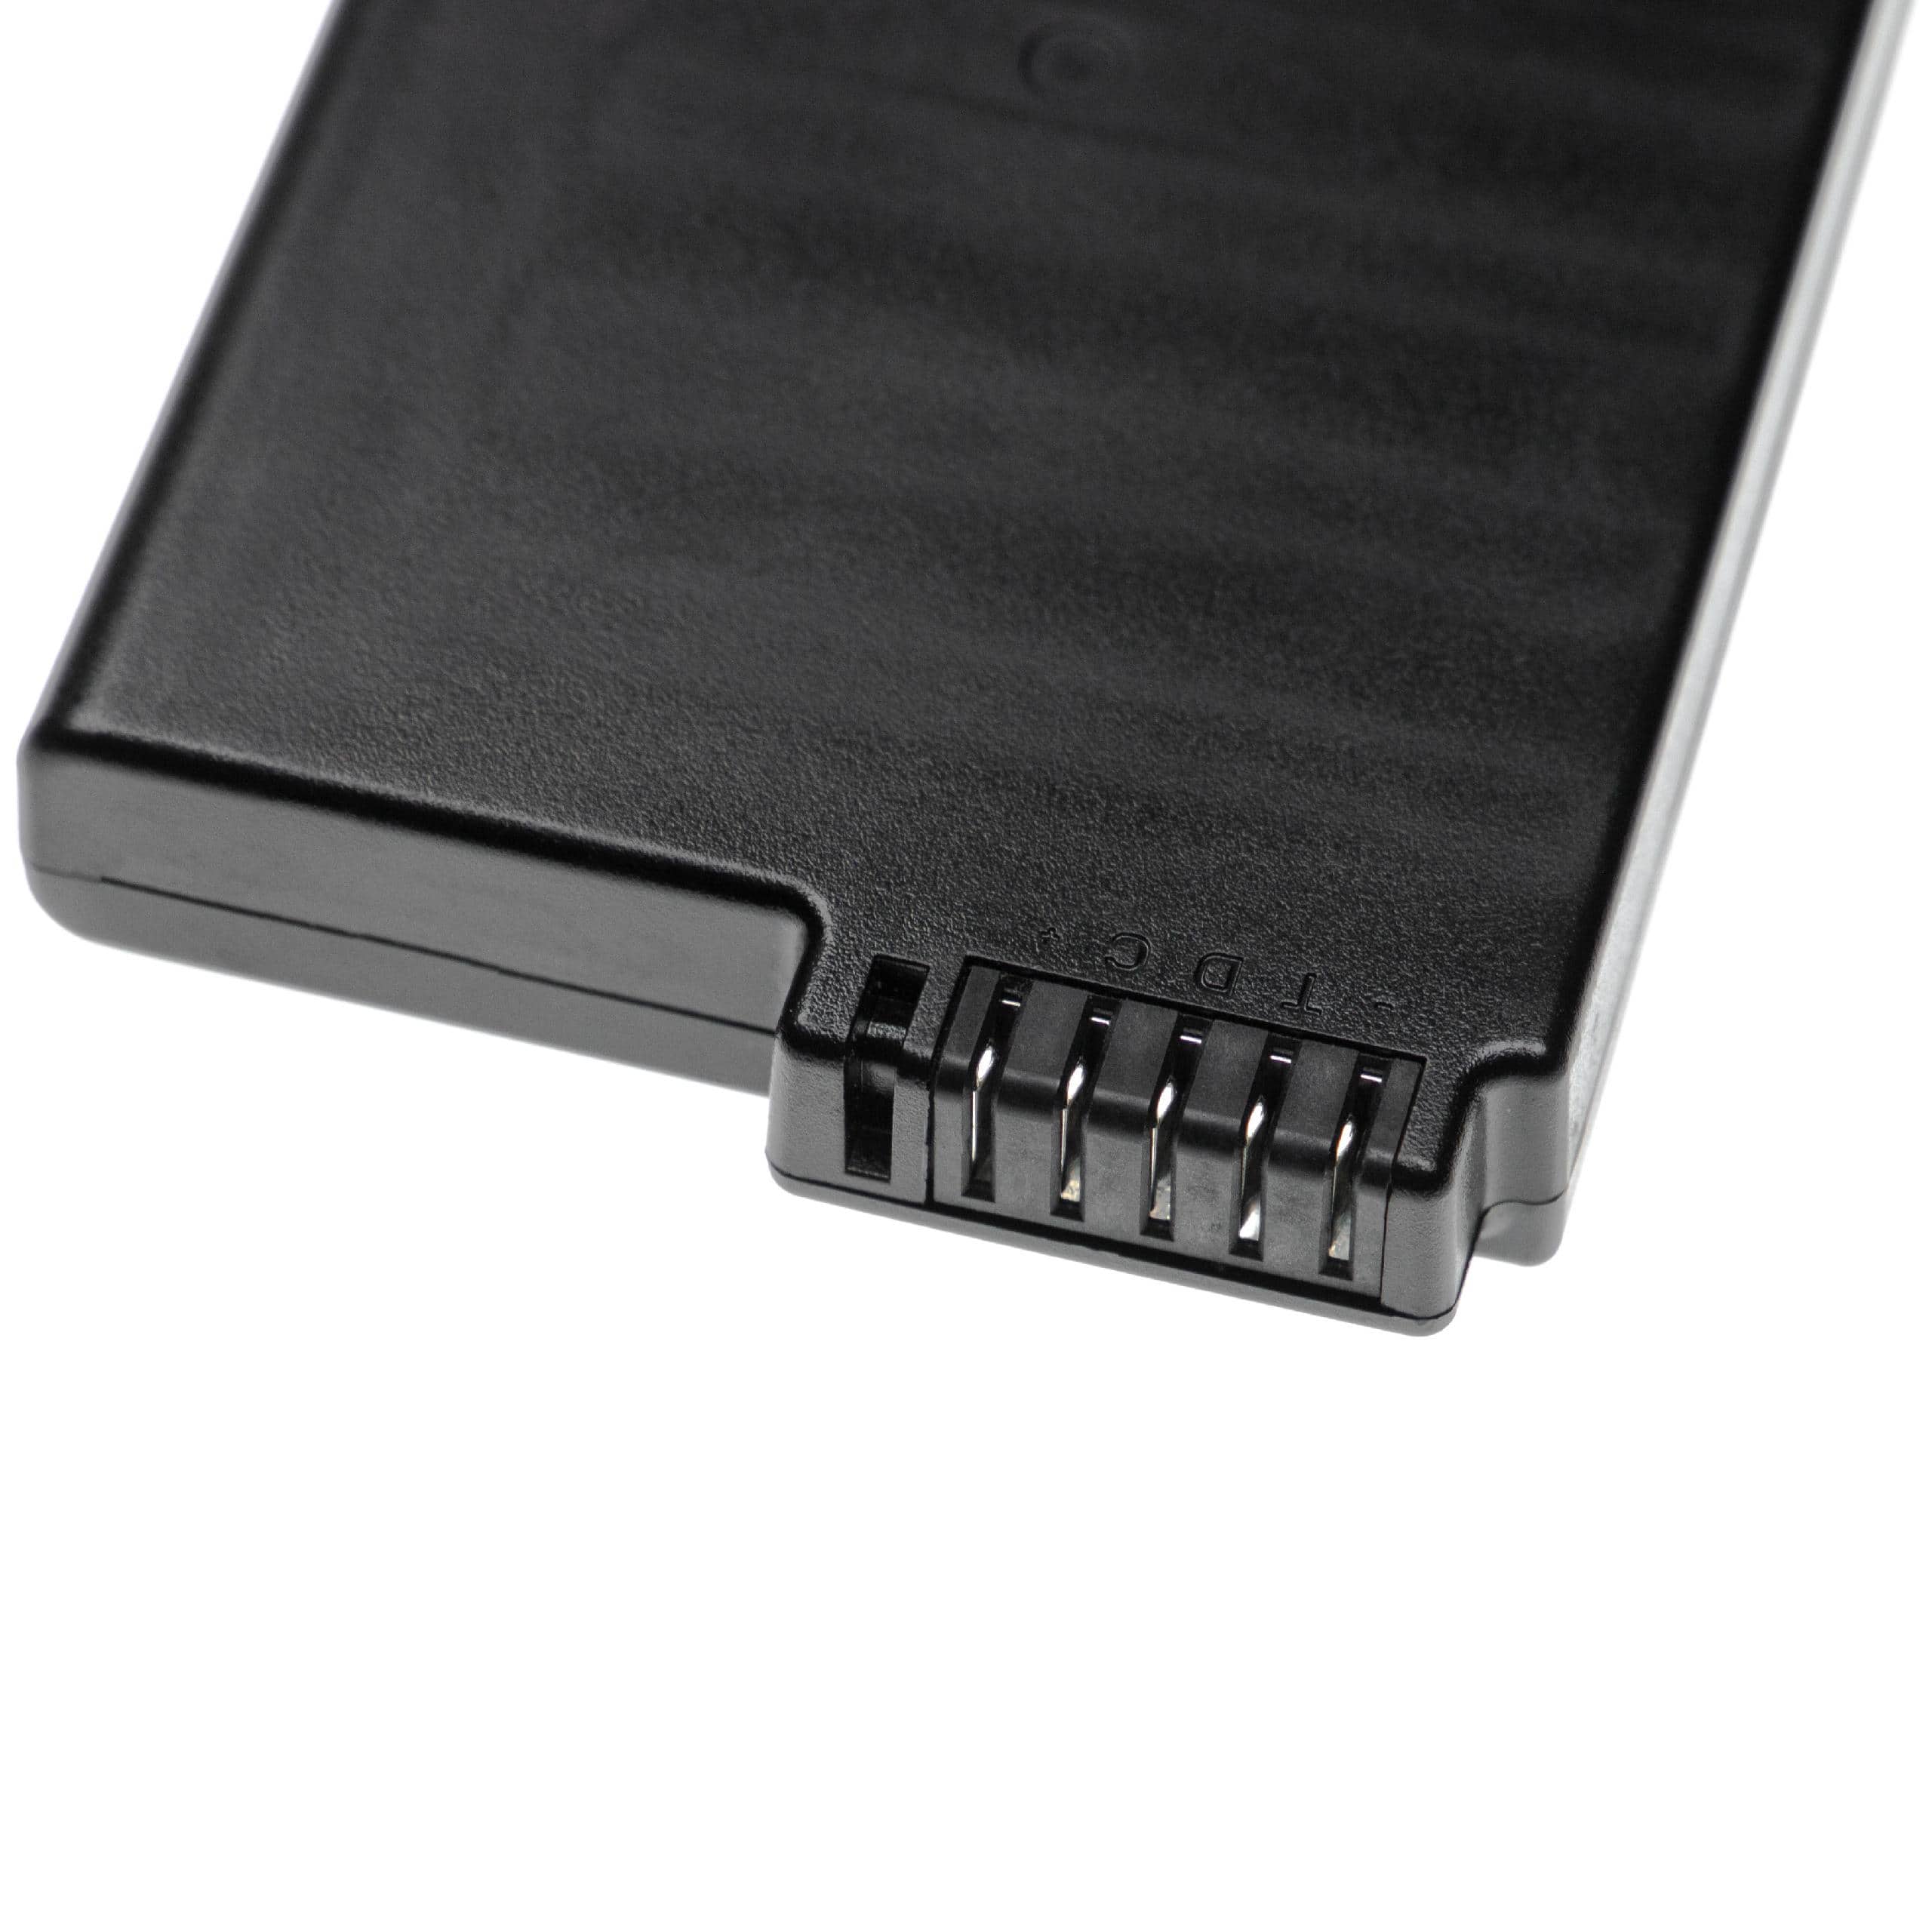 Batterie remplace Getac / Hasee 33-01PI, 338911120104 pour ordinateur portable - 8700mAh 10,8V Li-ion, noir